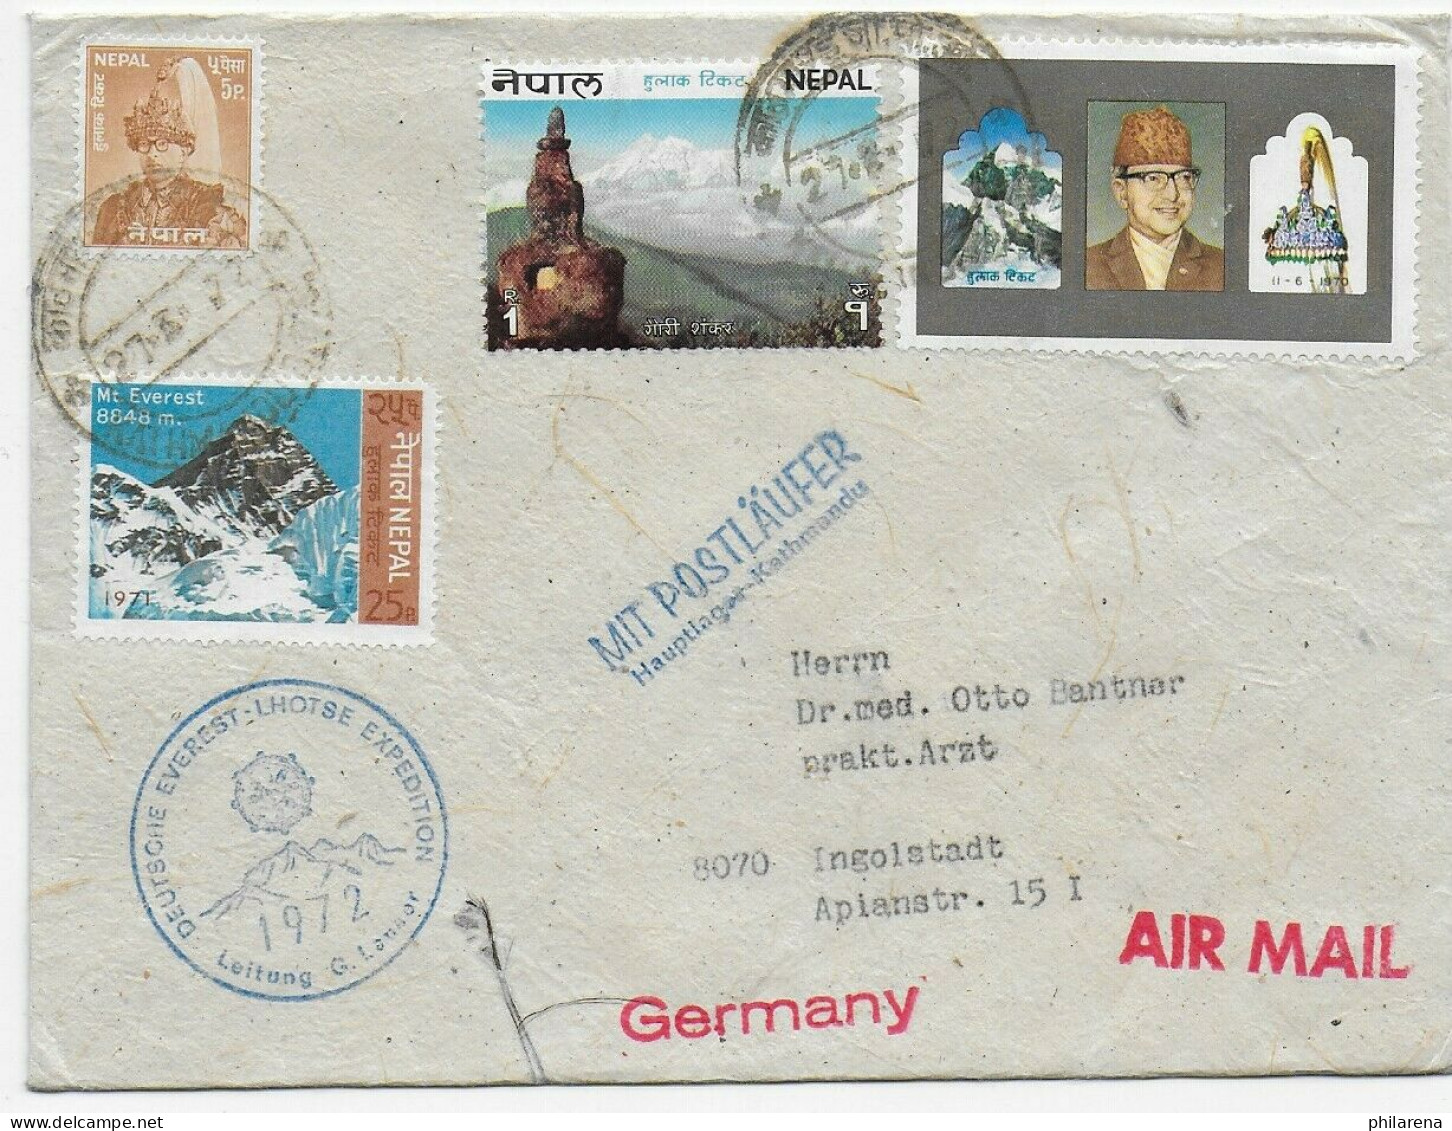 Mit Postläufer, Kathmandu, Deutsche Evererst Lhotse Expedition 1972, Air Mail - Népal